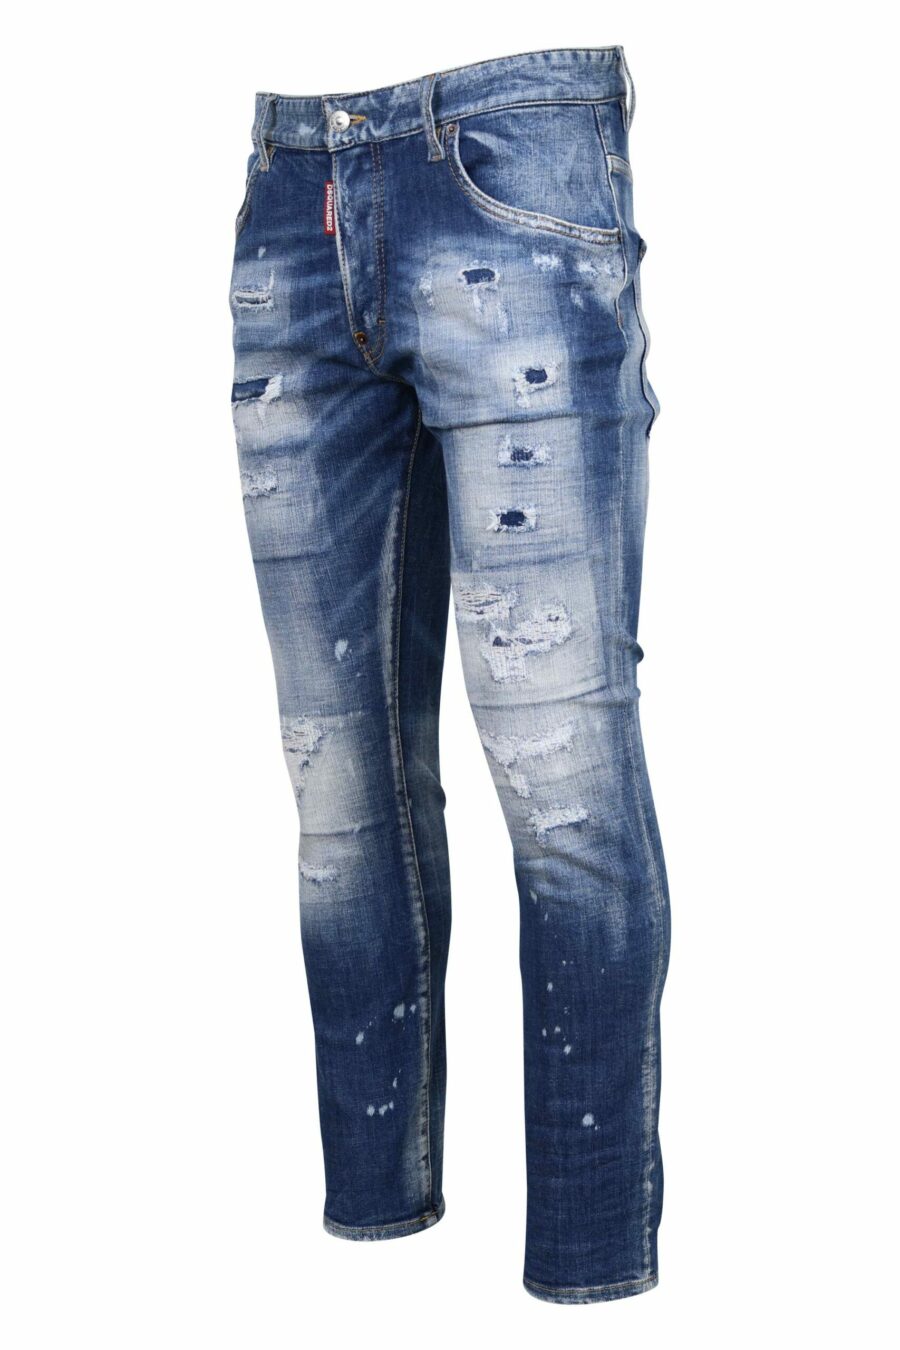 Calças de ganga azuis claras "skater jean" com rasgões e desgastadas - 8054148338848 1 scaled